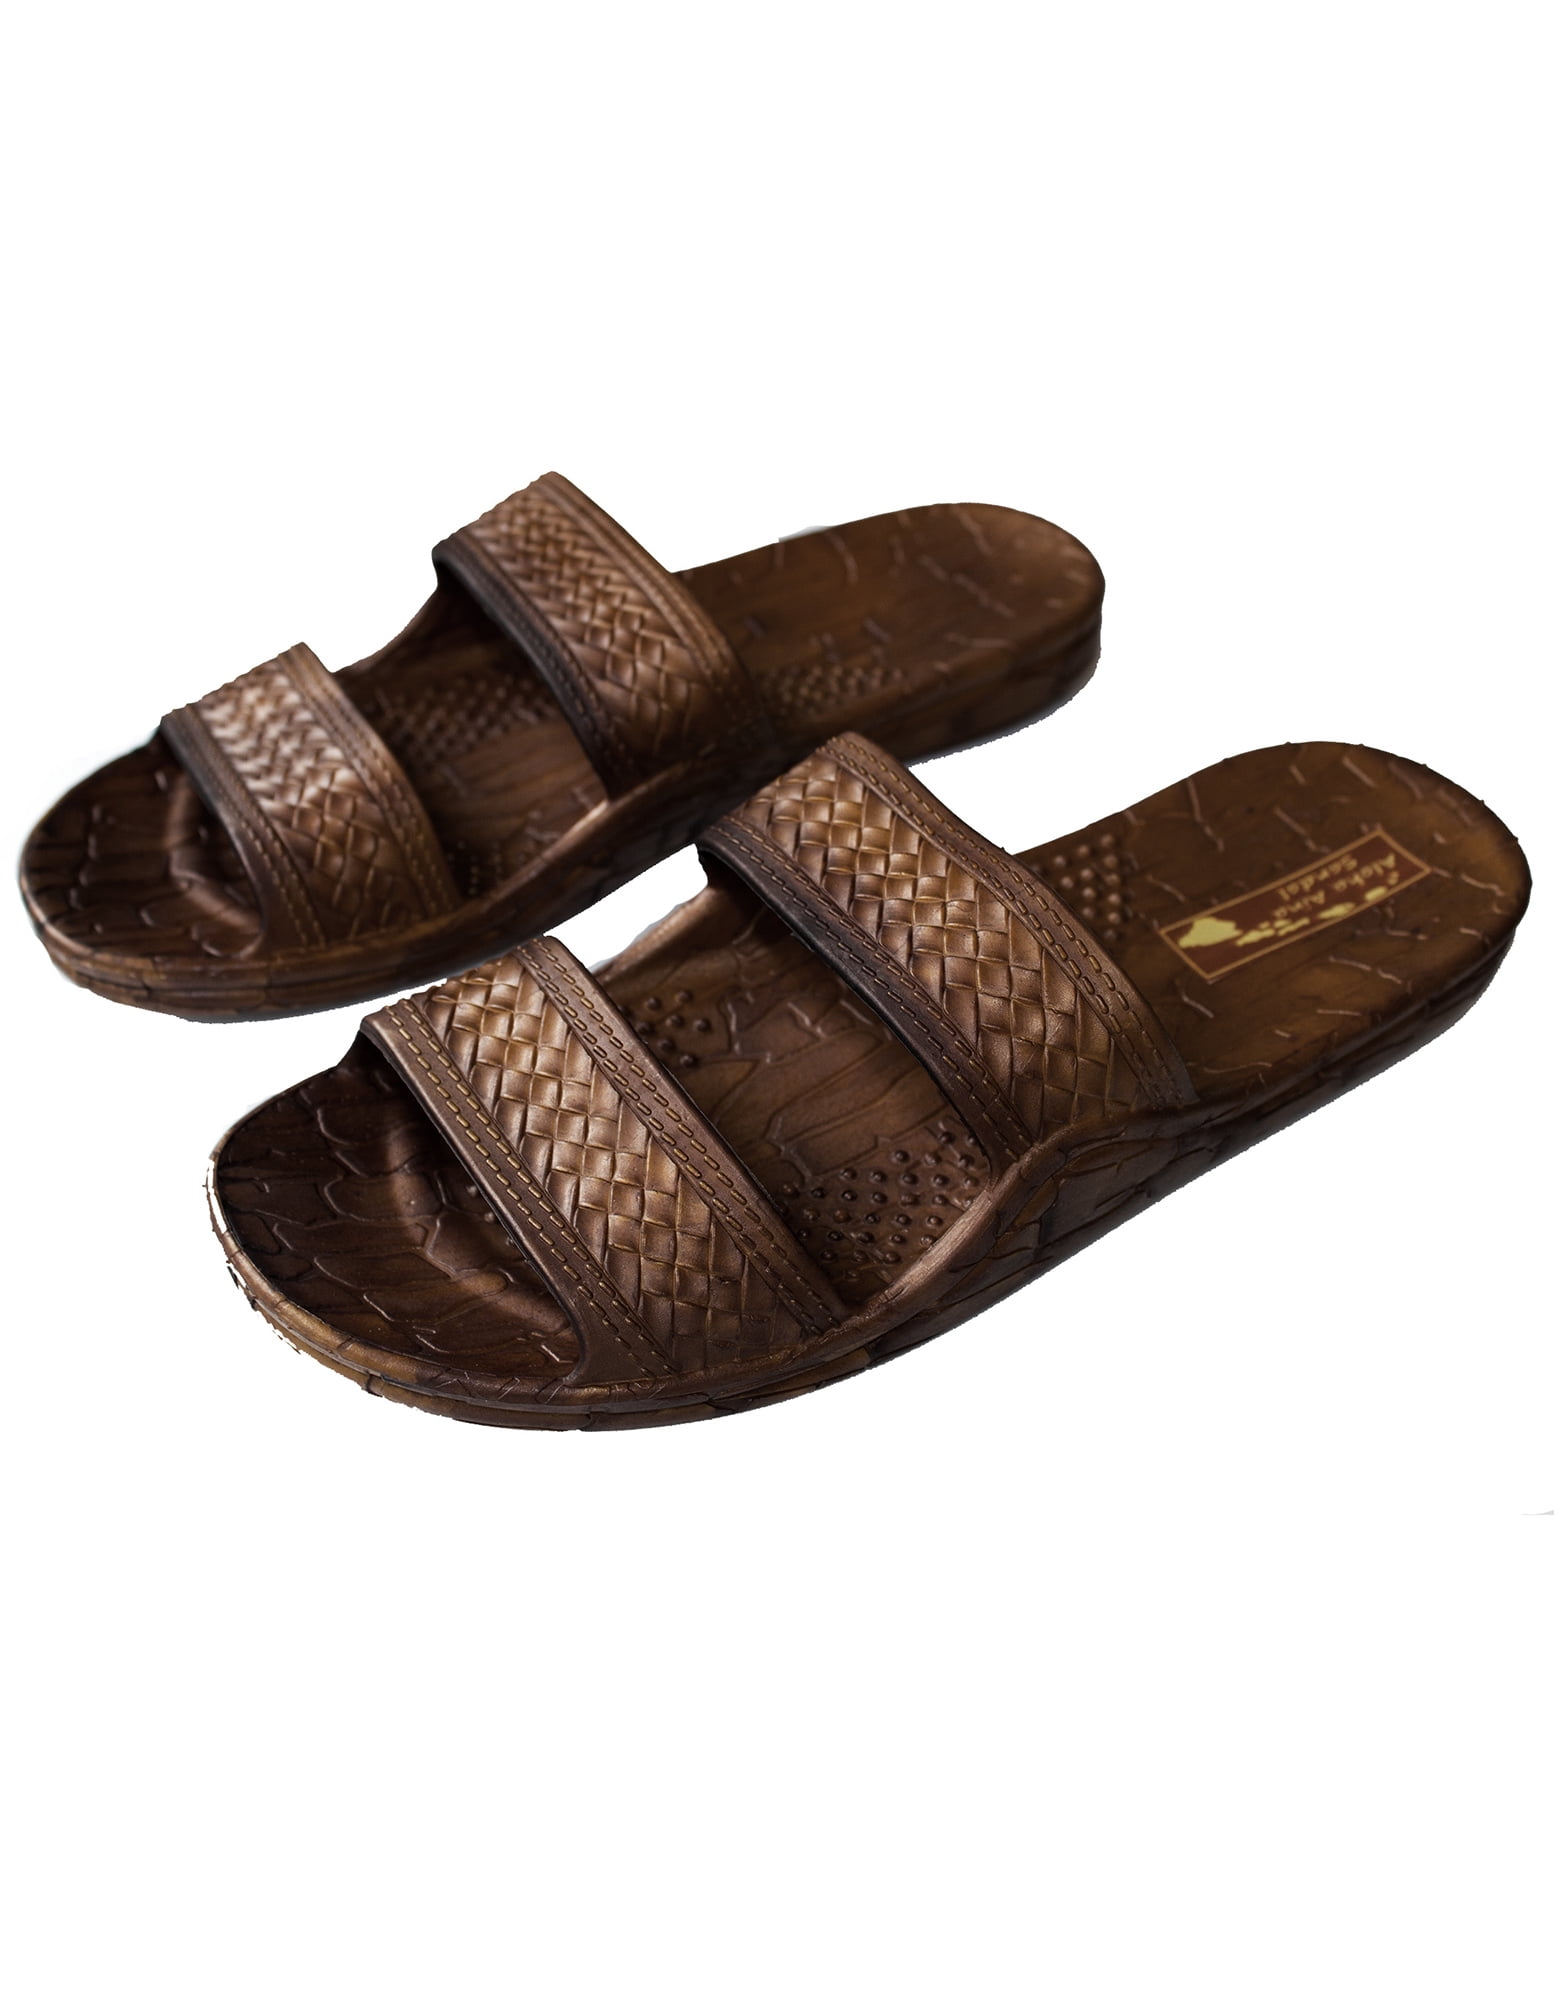 jslips hawaiian jesus sandalsjandals in 4 cool colors unisex 12 little  kid coconut  Walmartcom